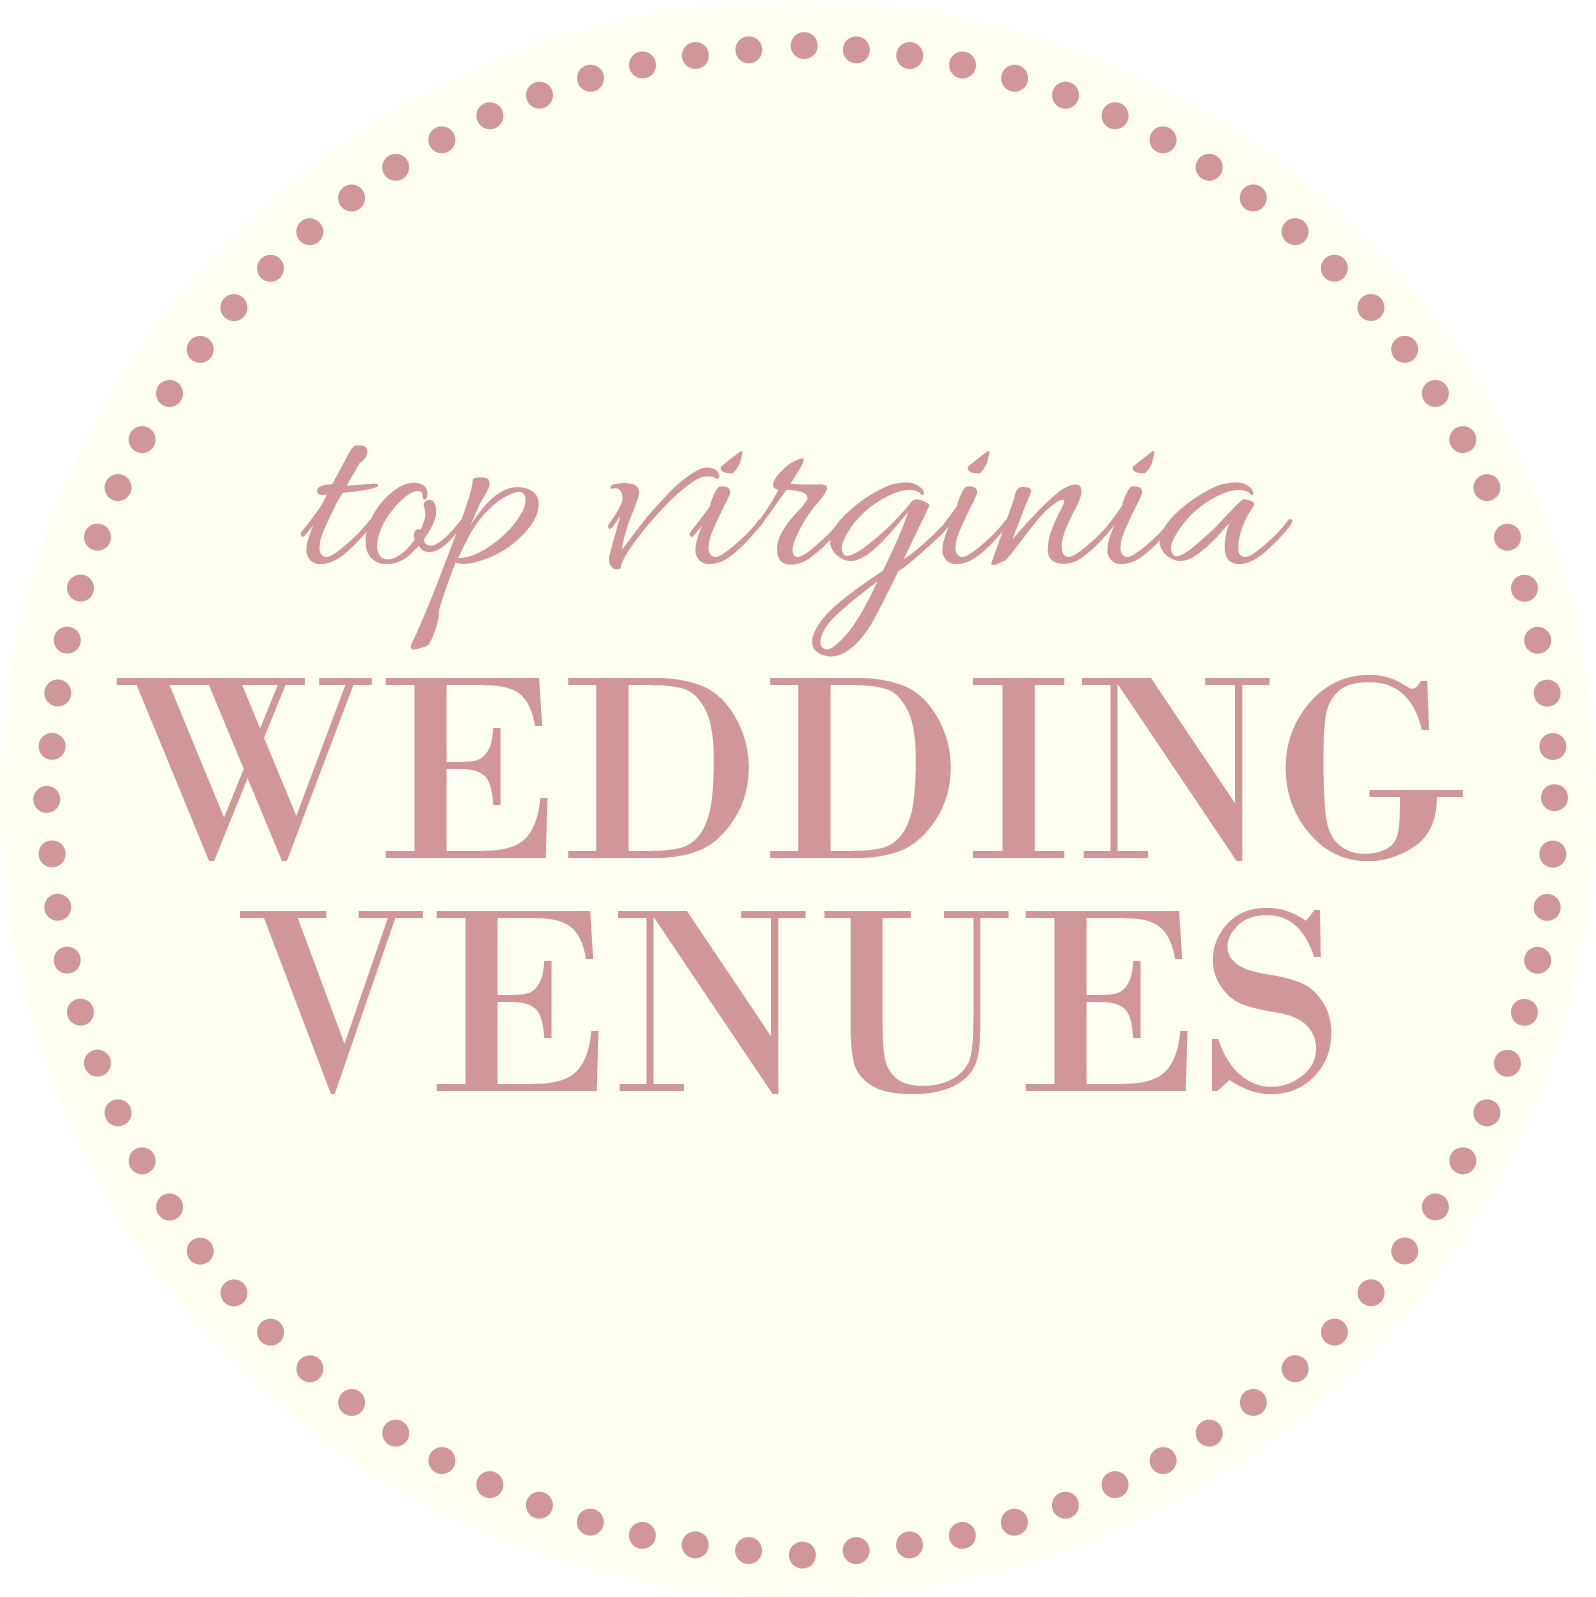 Top Virginia Wedding Venues